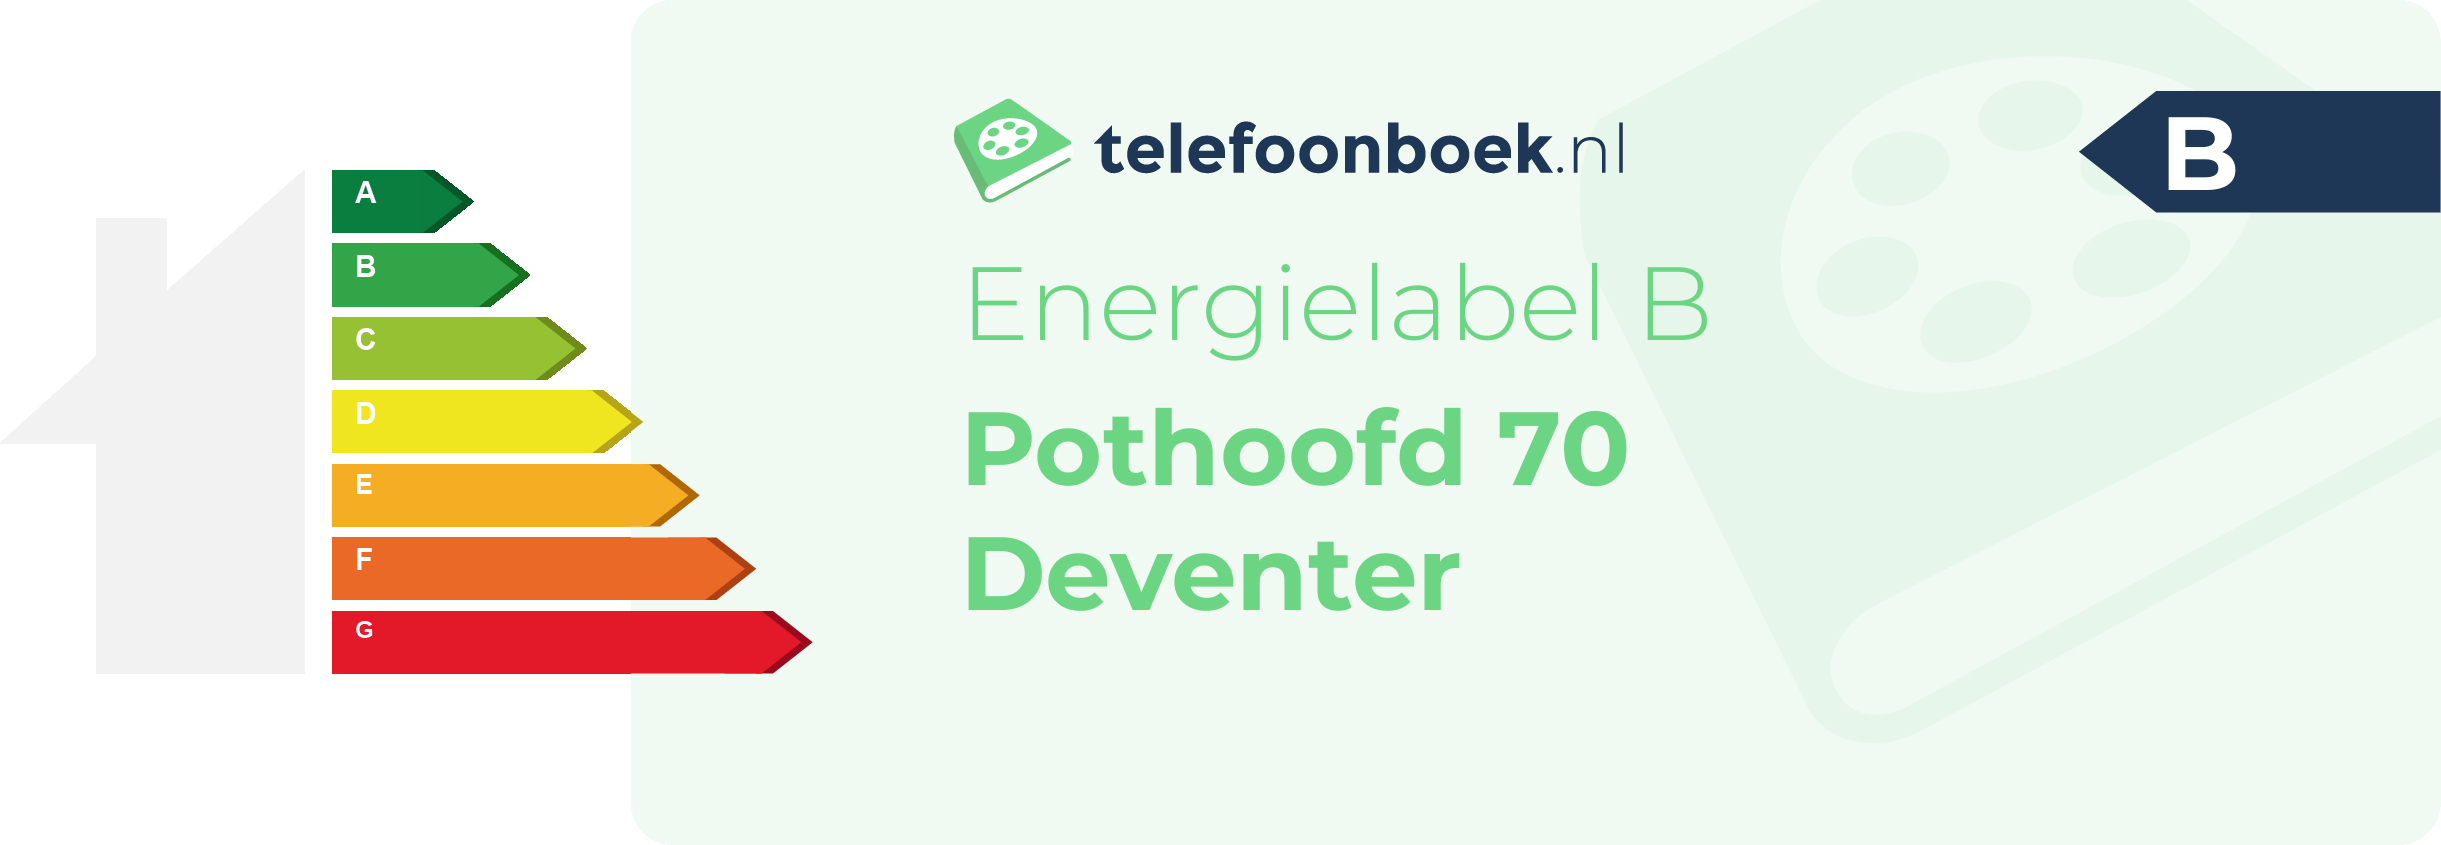 Energielabel Pothoofd 70 Deventer